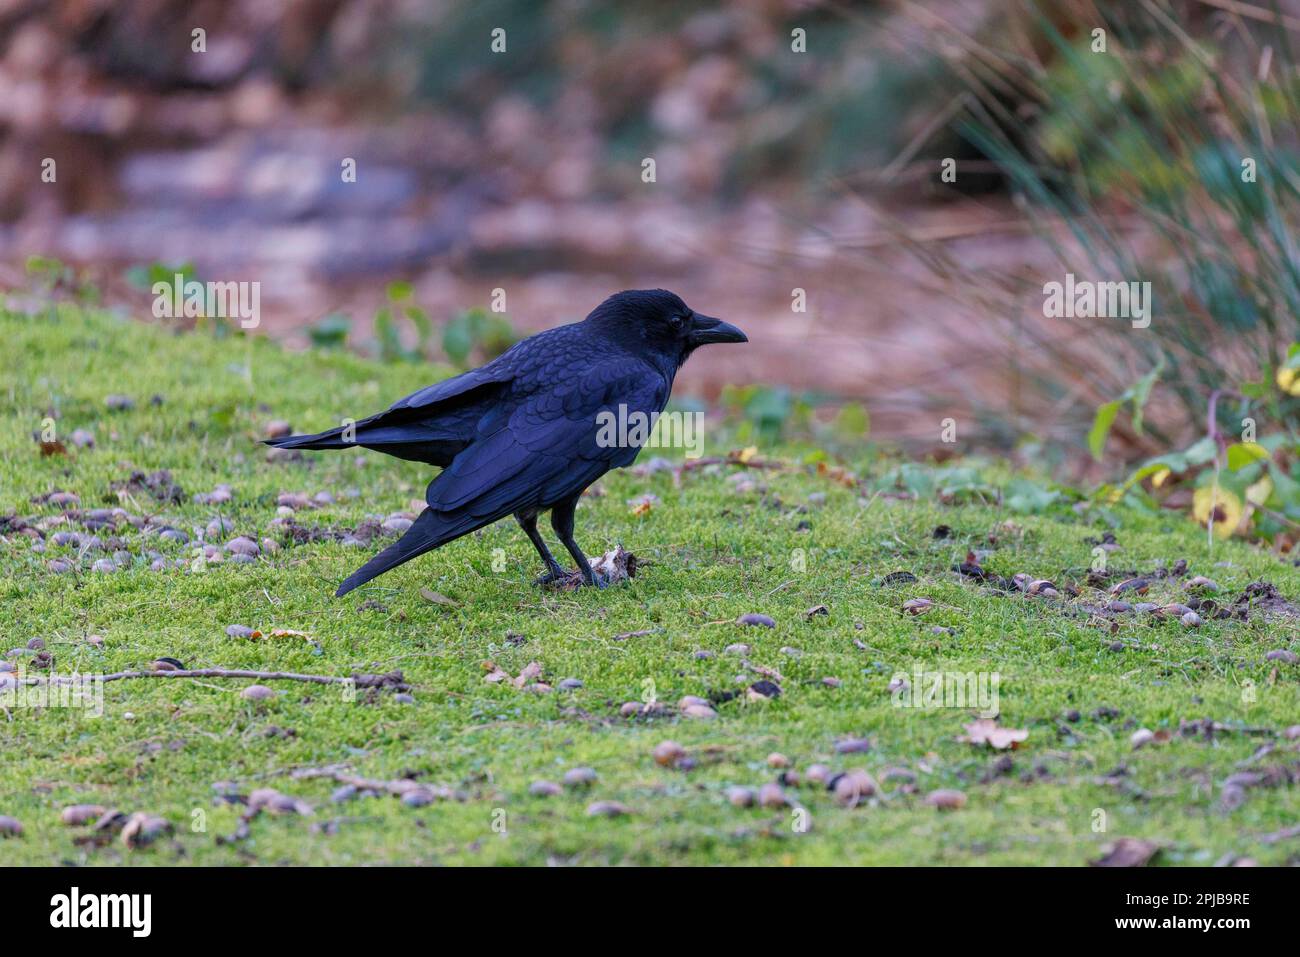 Carrion crow (Corvus corone), Germany Stock Photo